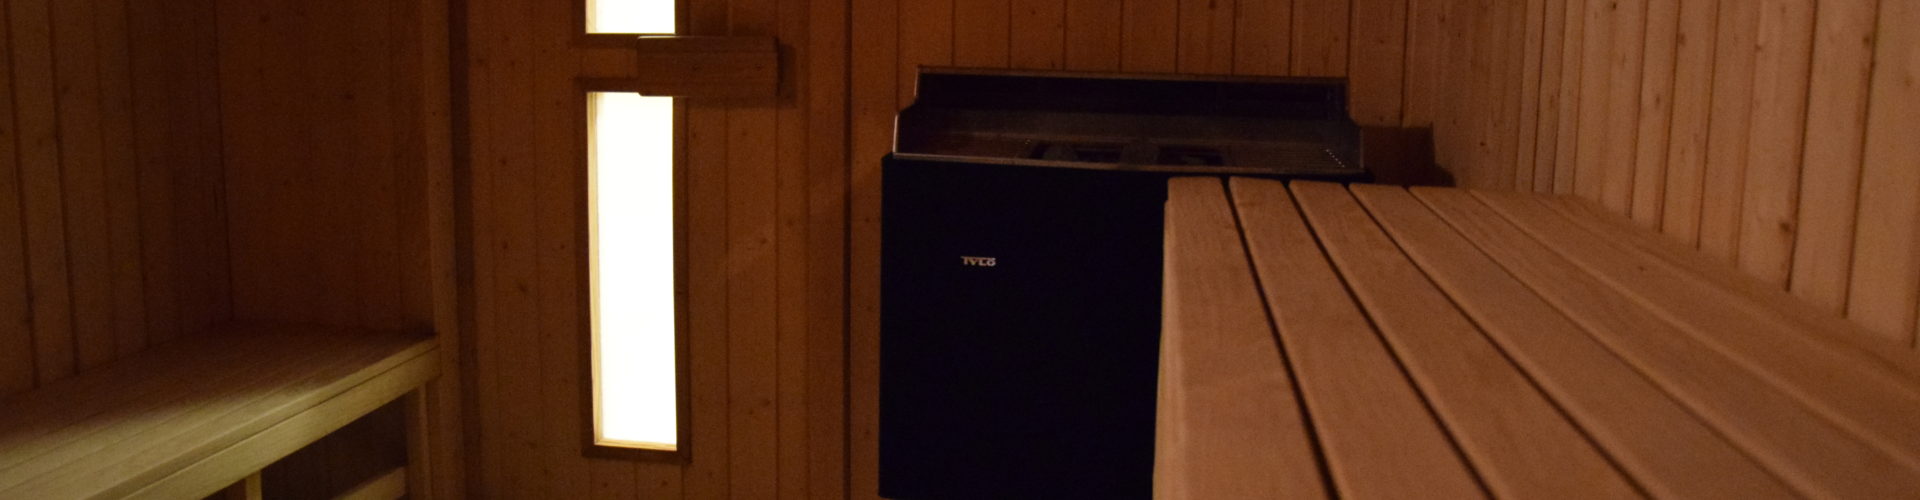 Sauna er integreret del af et besøg i Snejbjerg Svømmhal